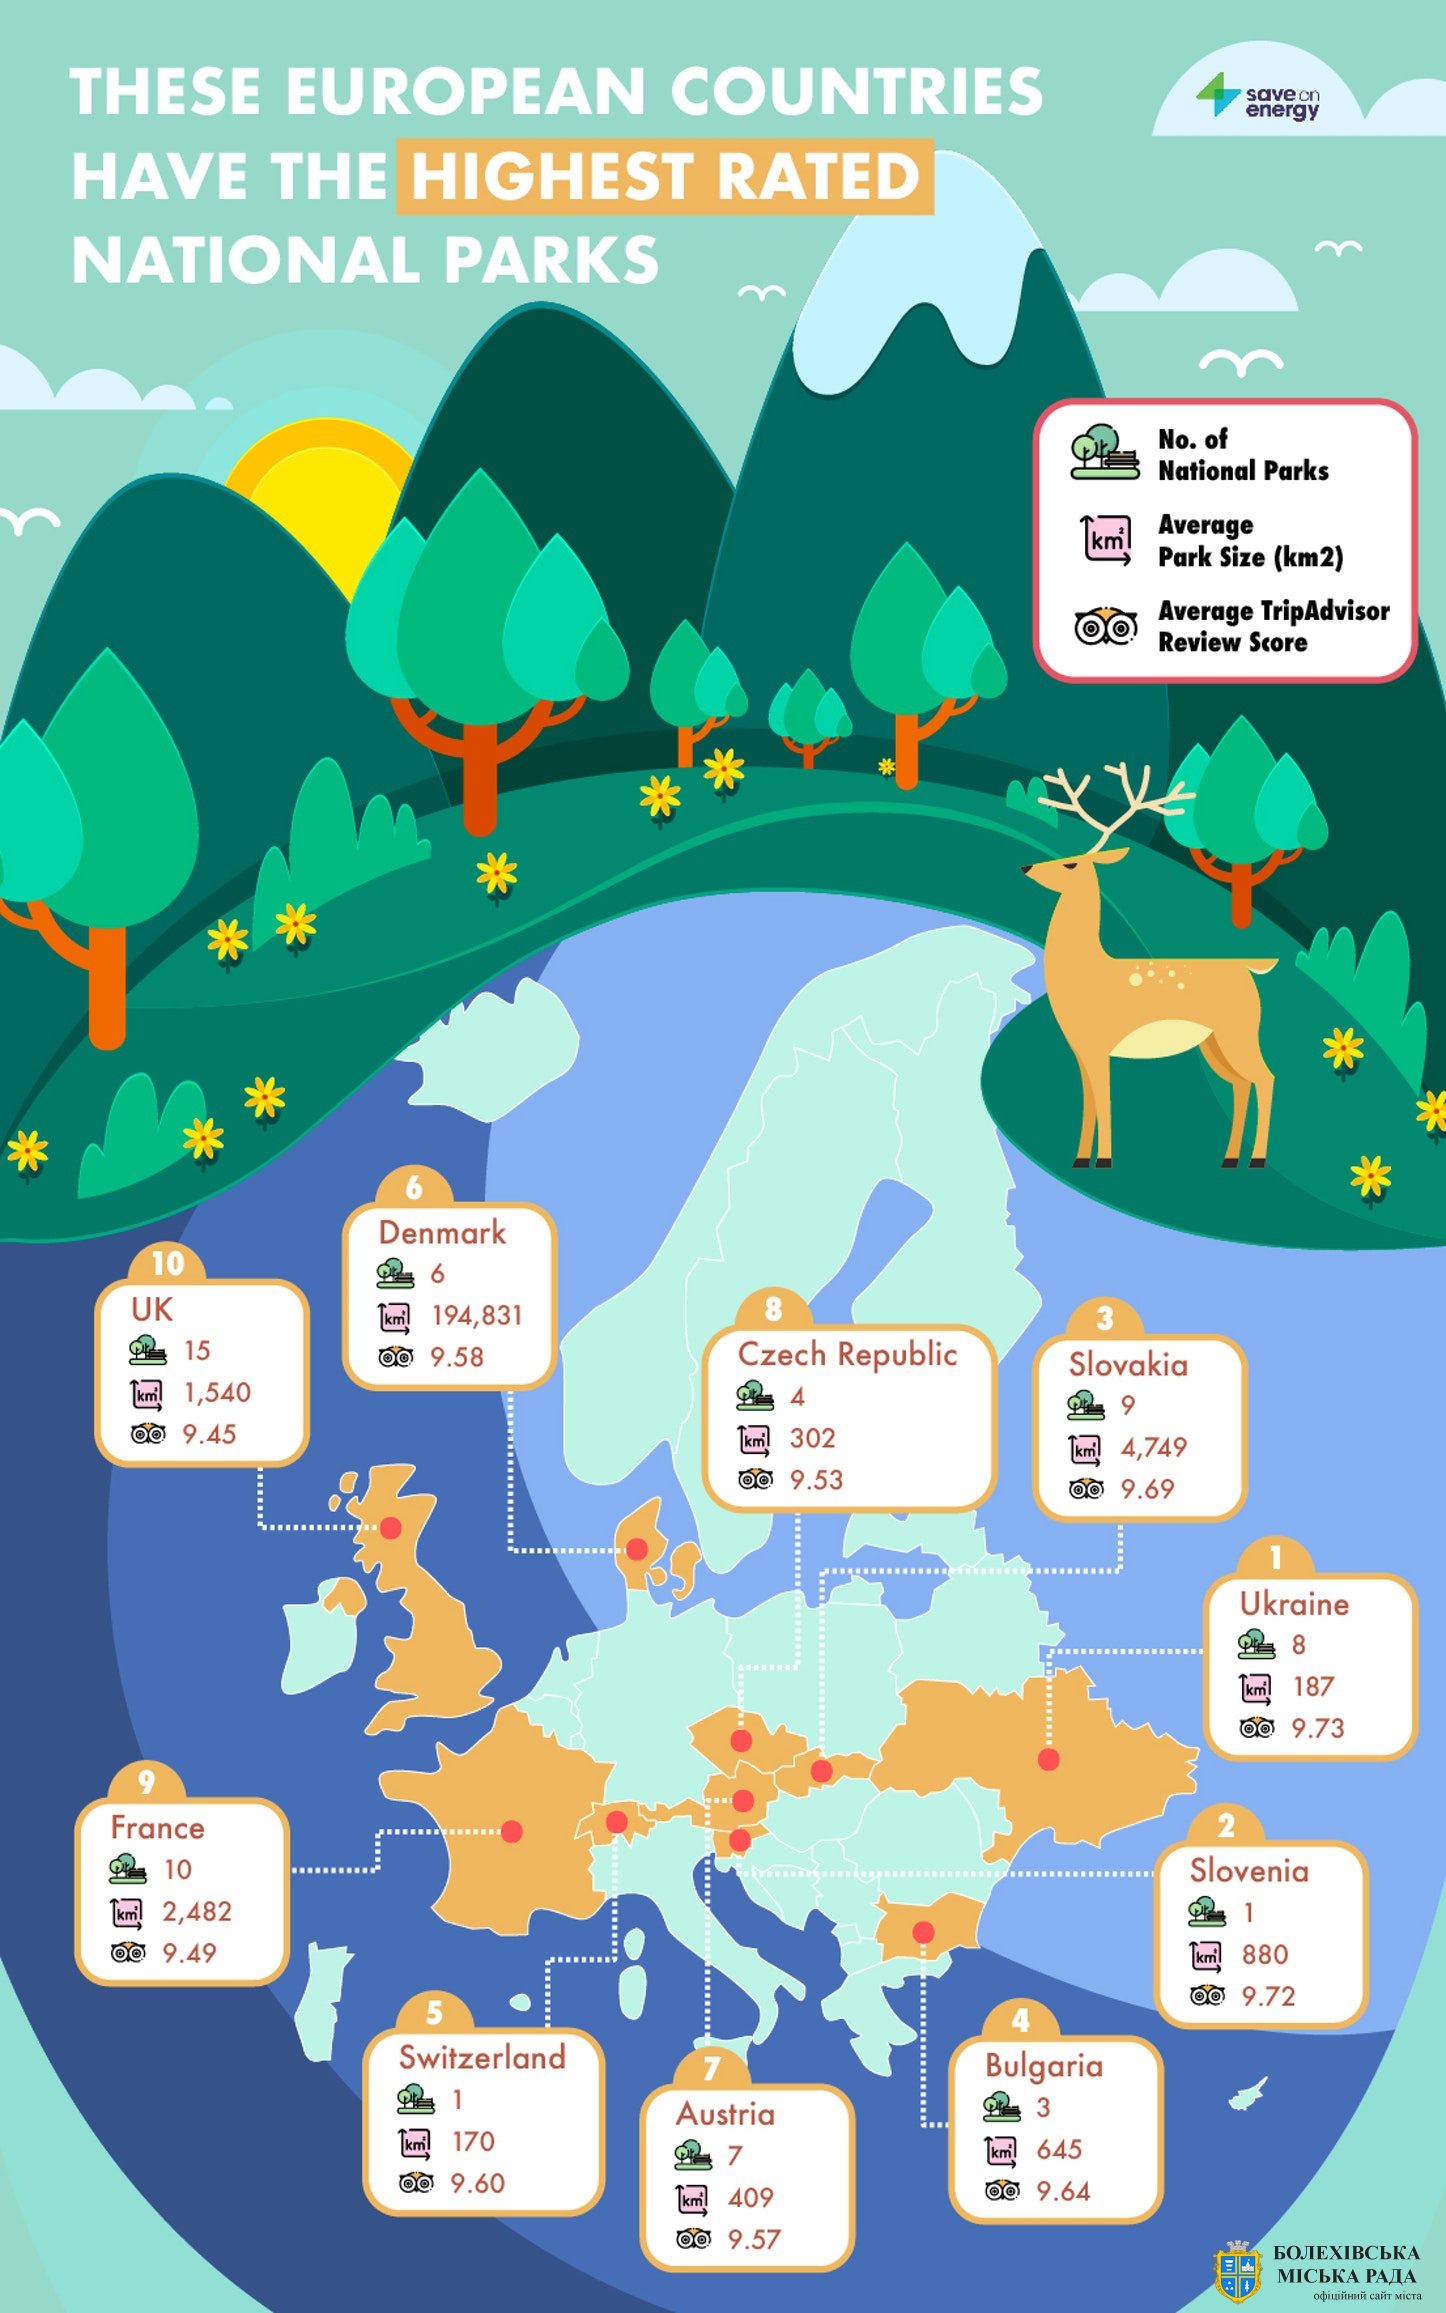 Карпатський національний природний парк – лідер серед європейських національних парків